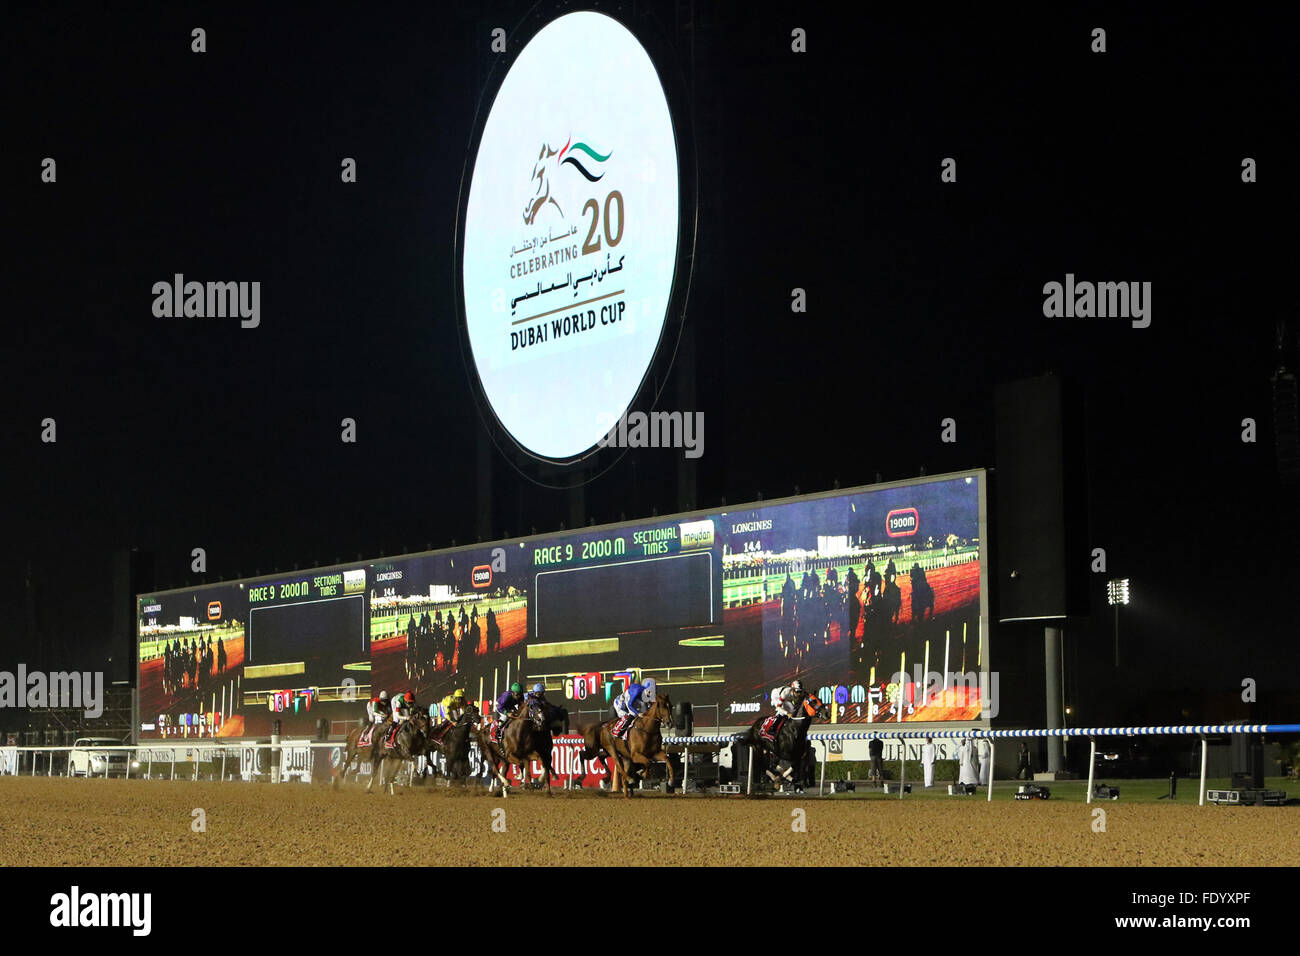 Dubai, Vereinigte Arabische Emirate, Pferde und jockeys während der 20. Dubai World Cup vor dem Bildschirm Stockfoto